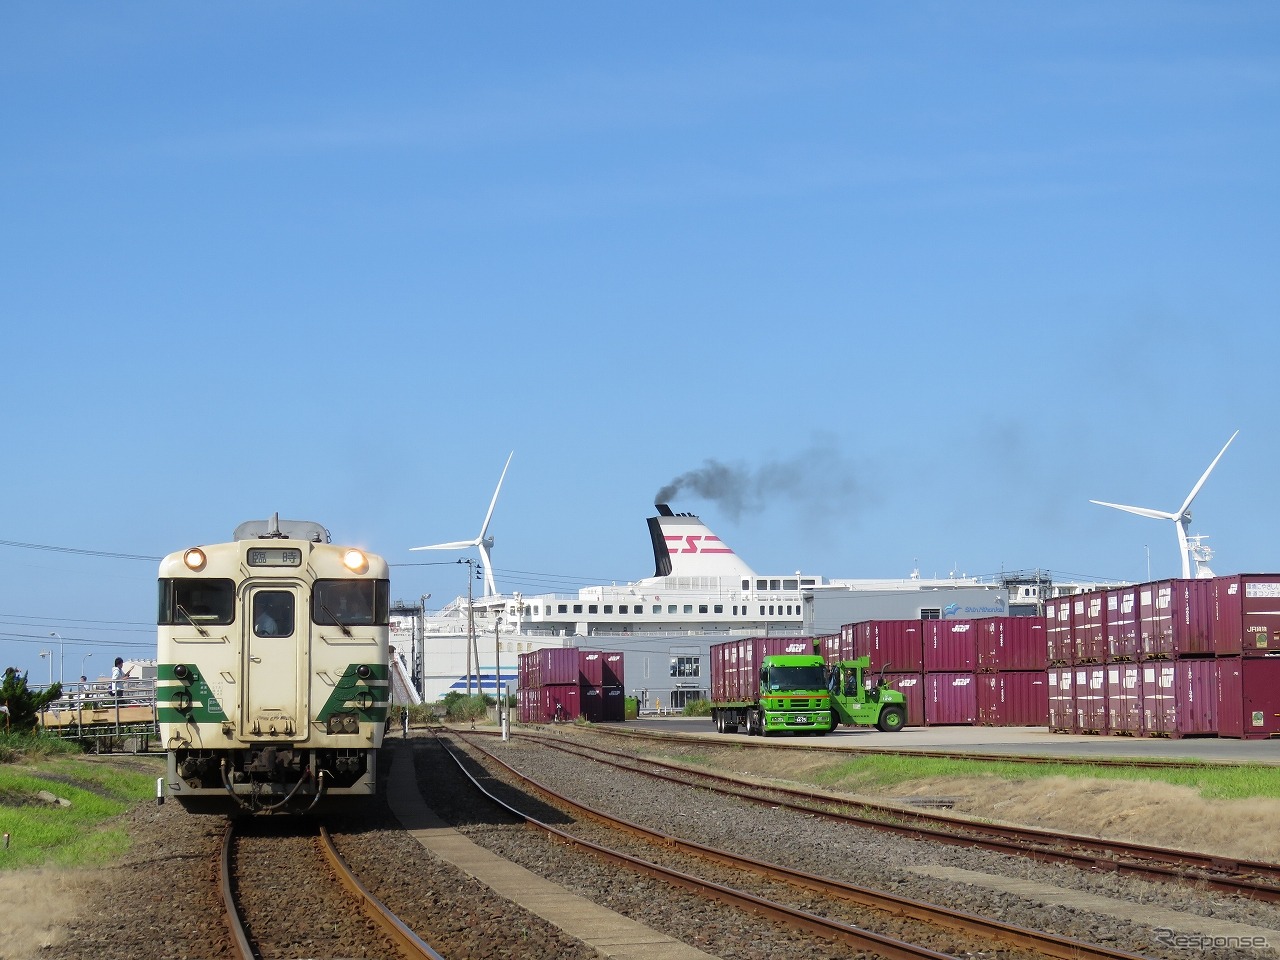 現在は奥羽本線貨物支線の駅となっている秋田港駅。写真は2018年に秋田臨海鉄道が入換業務を受託していたクルーズ列車で、試験運行時のもの。